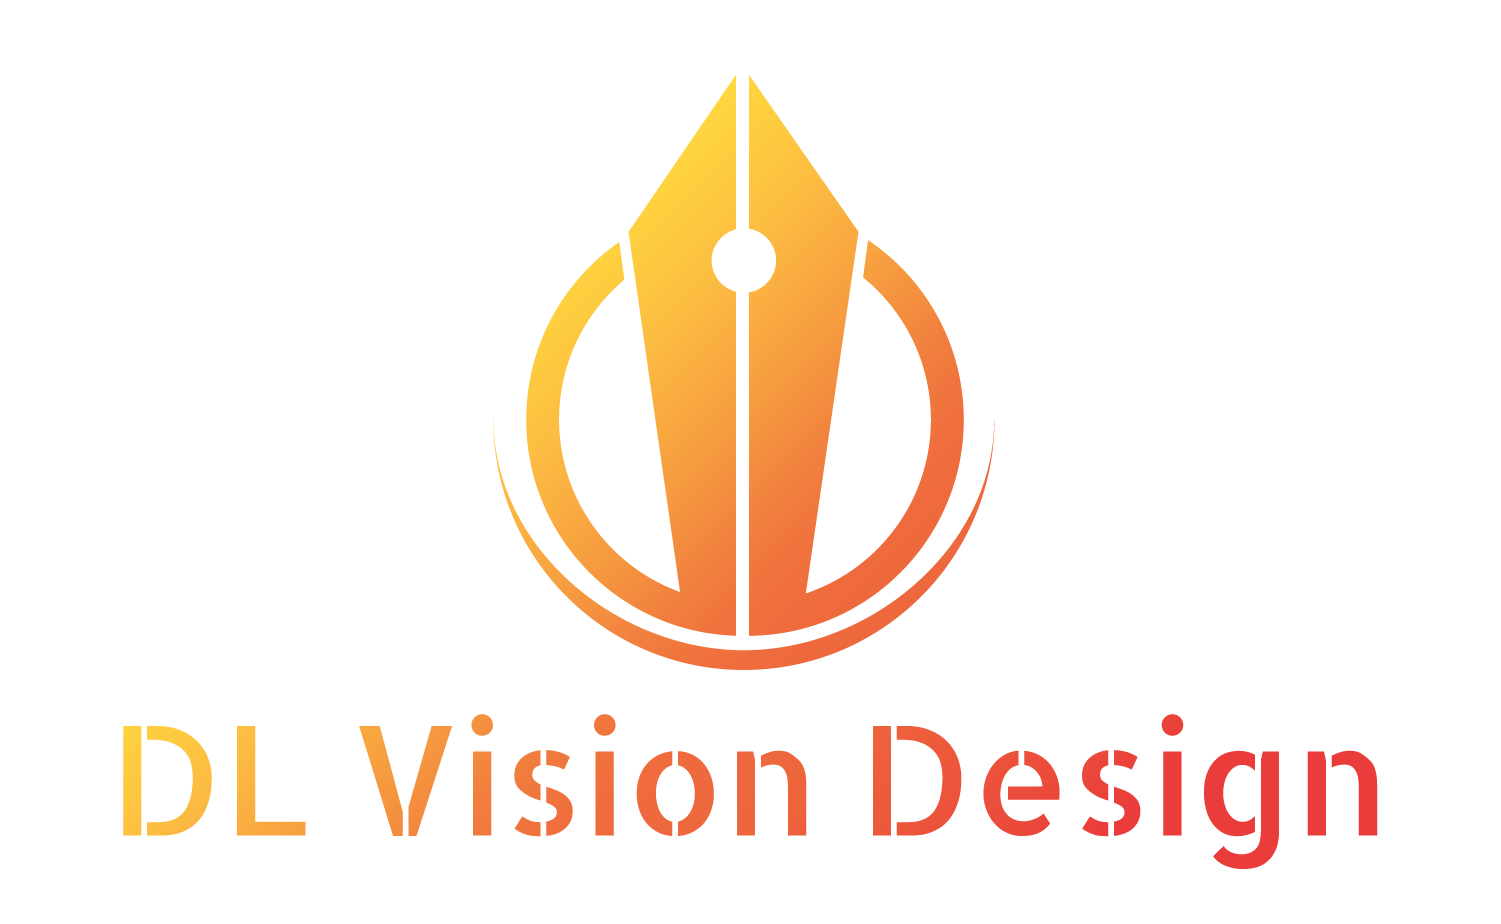 DL Vision Design